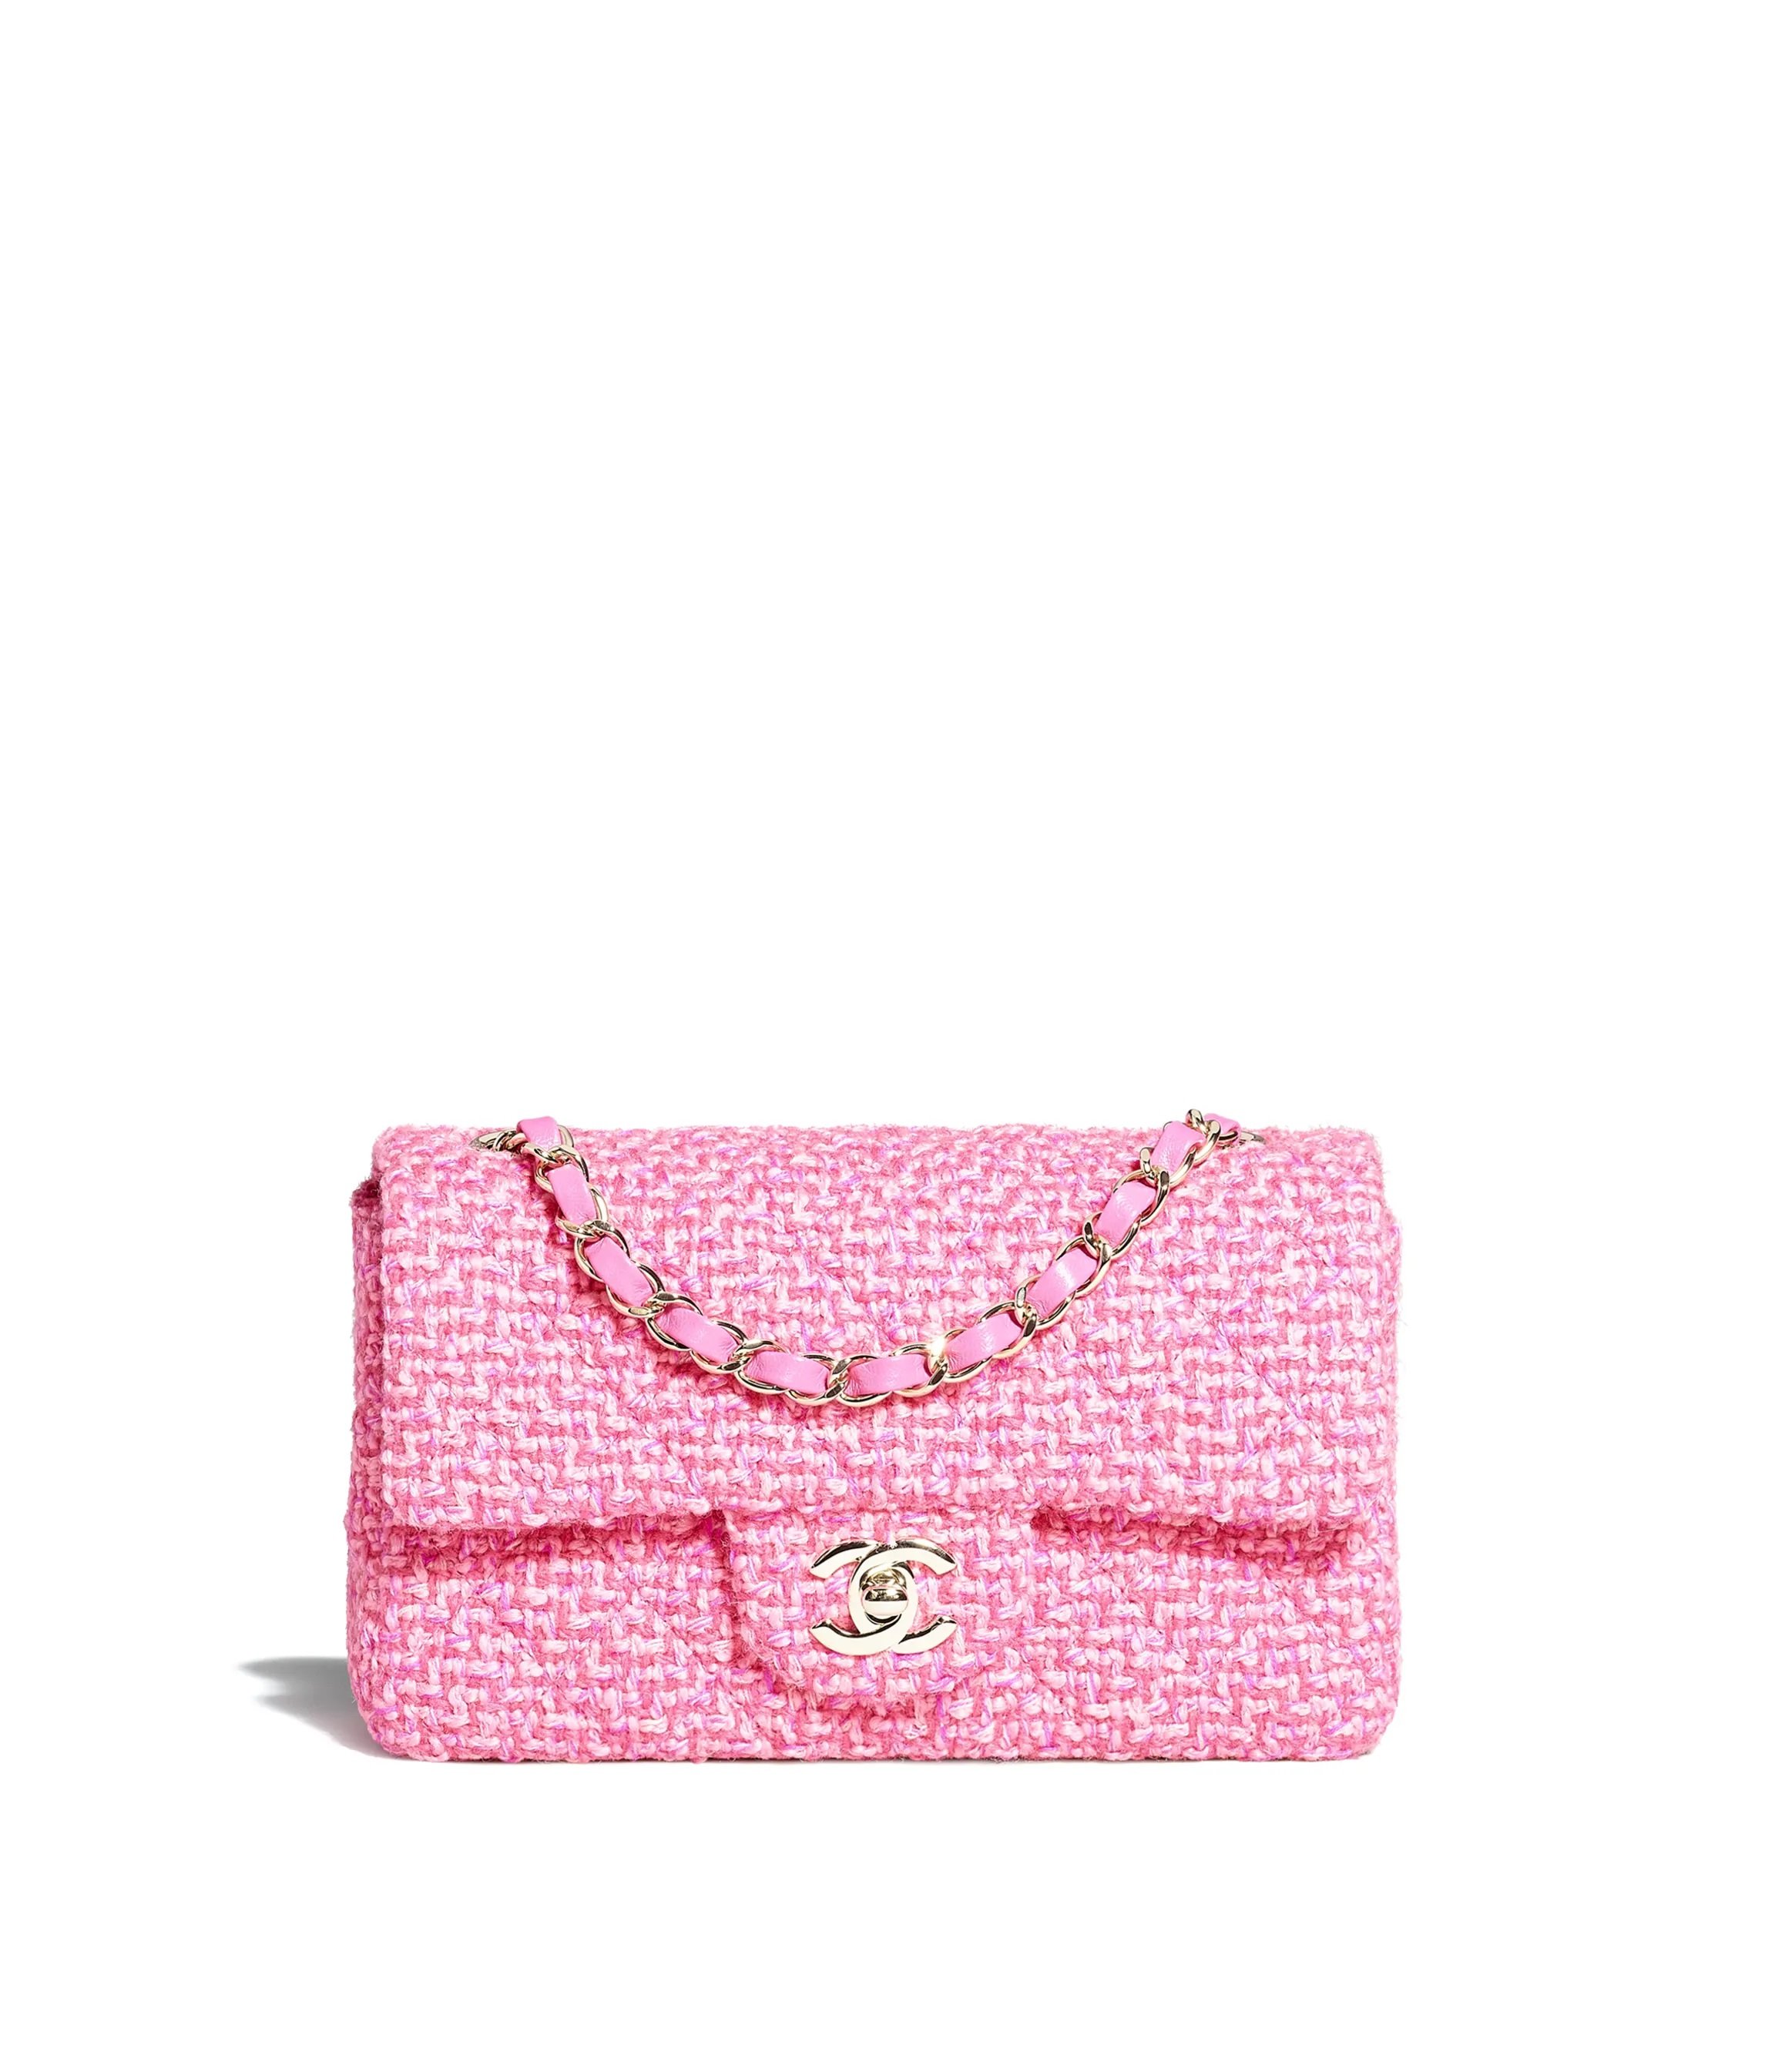 Chanel 2.55 Flap Bag in Pink, Dark Pink & Fuchsia Wool Tweed.jpg